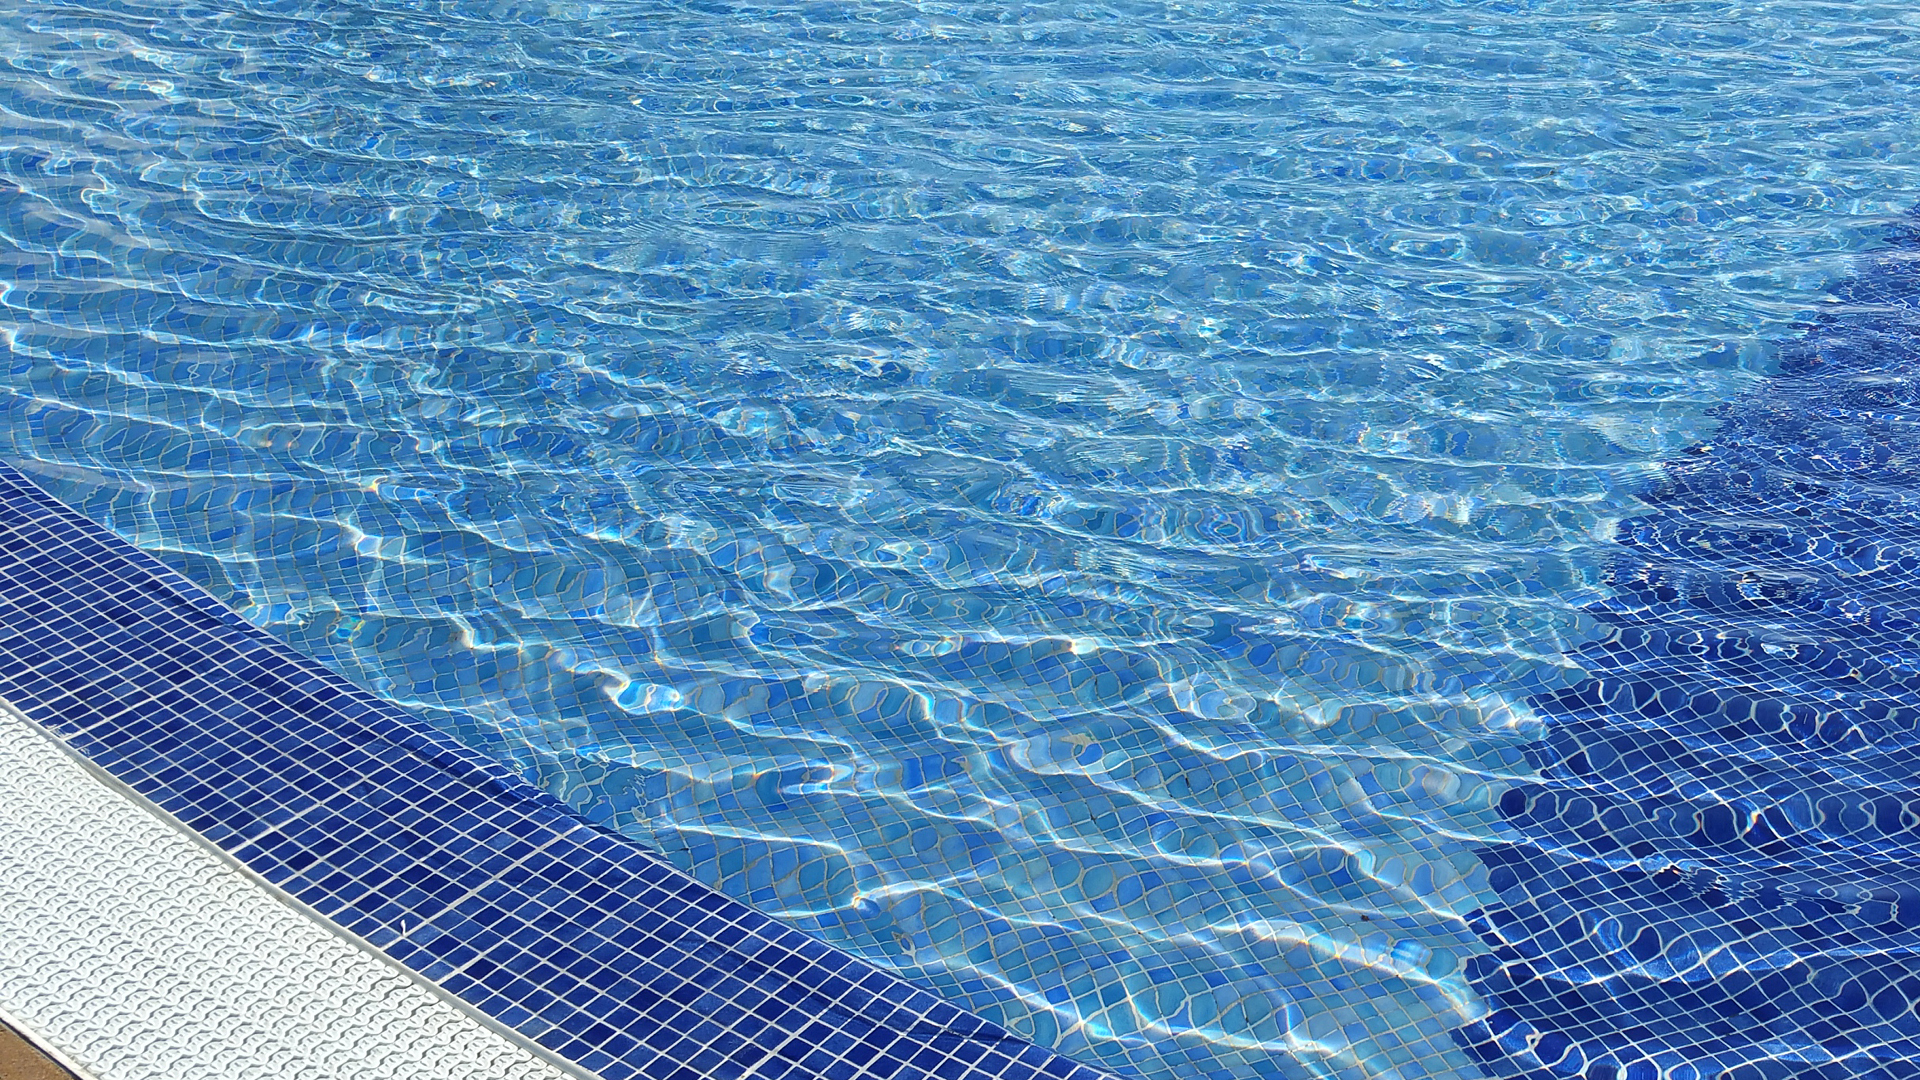 Fotostrecke Blau 05: Swimmingpool einer Hotelanlage auf Fuerte Ventura